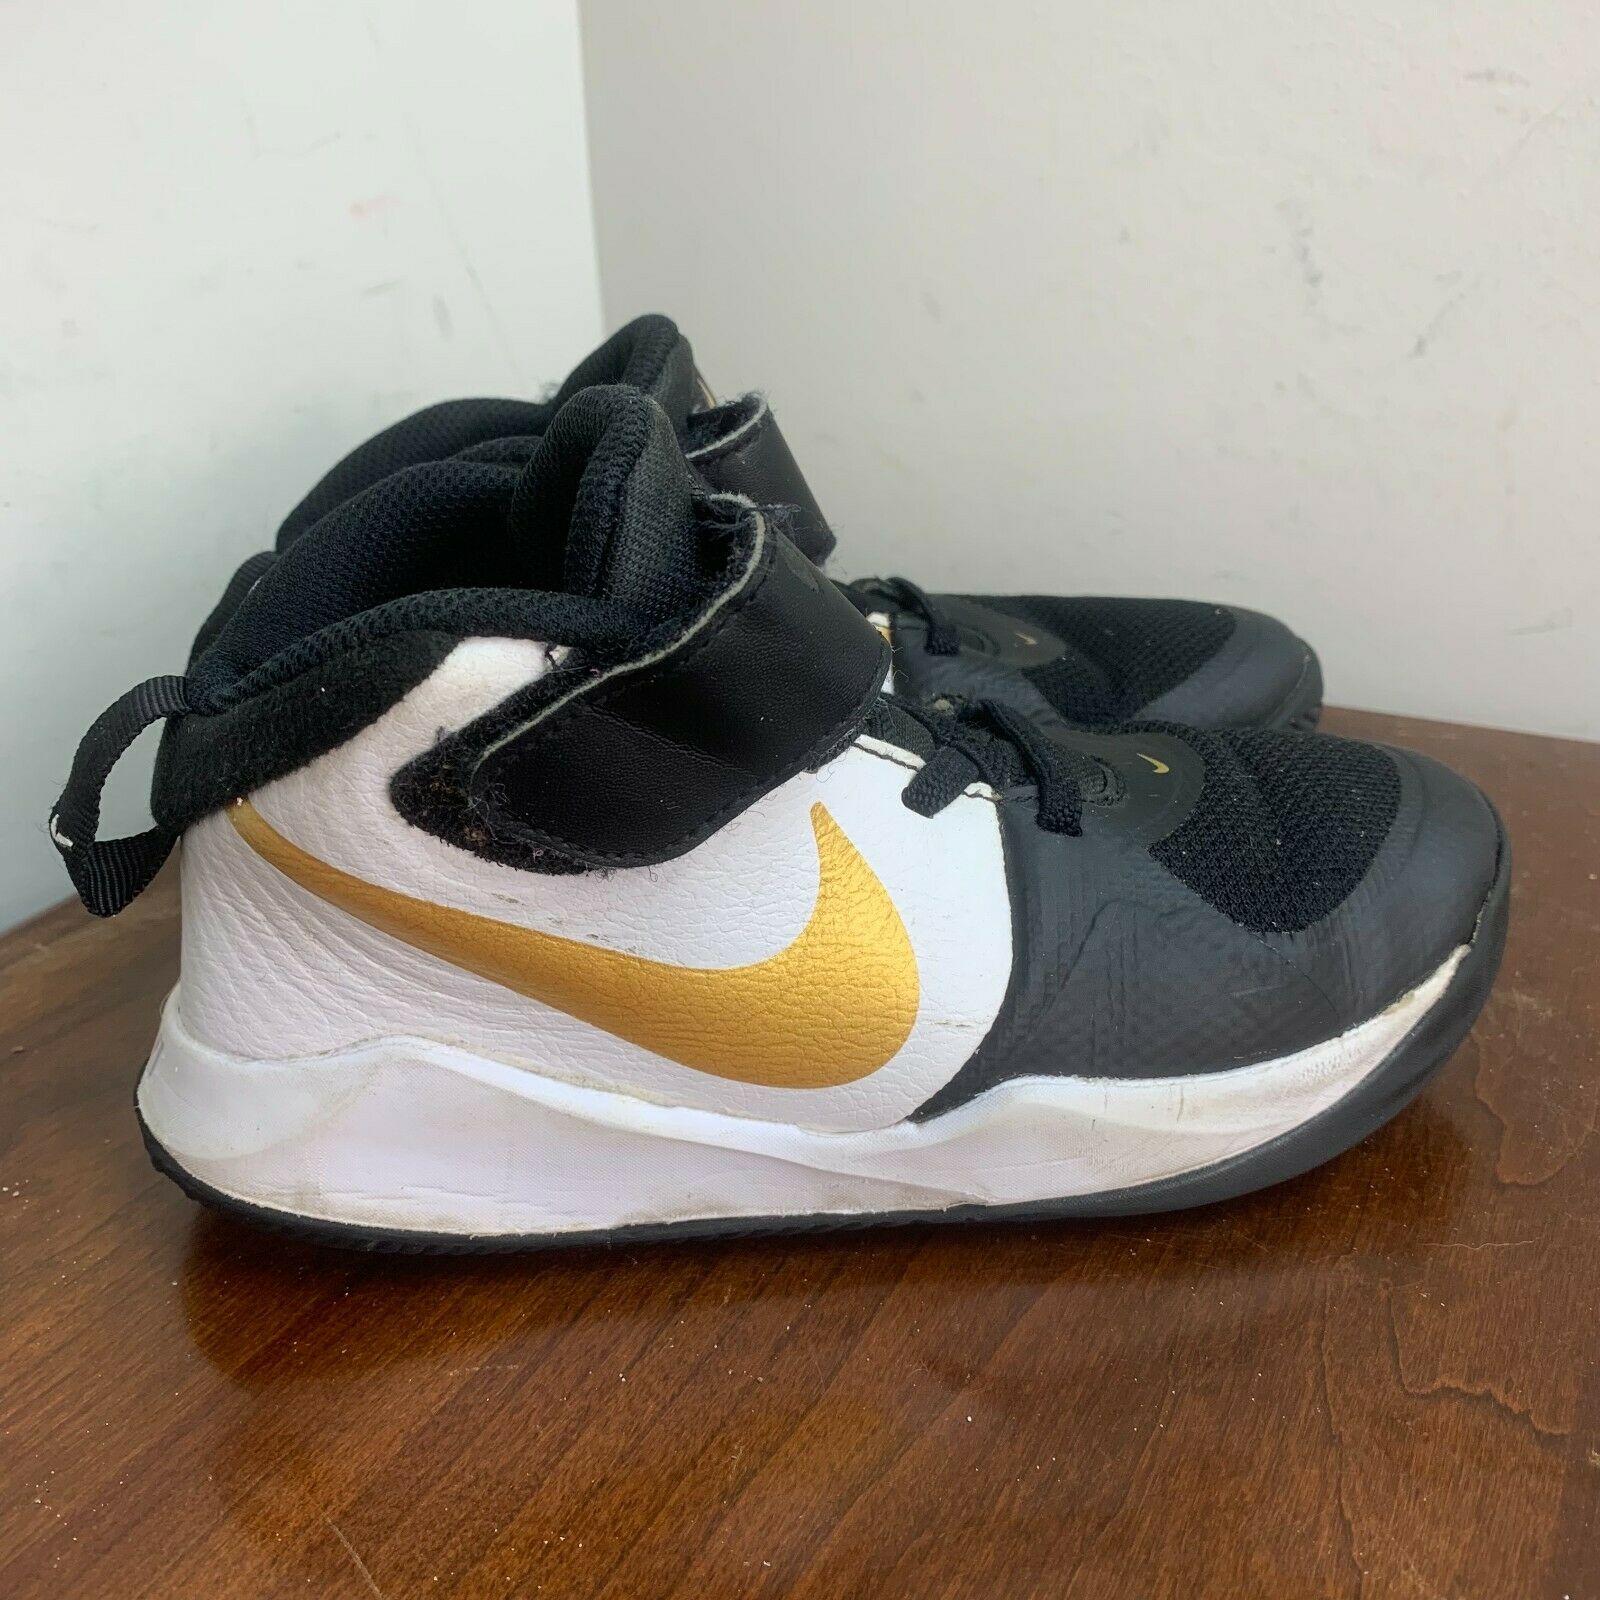 Nike Boys Team Hustle D 9 Basketball Shoes Black AQ4225-004 2019 Hook Loop 1Y